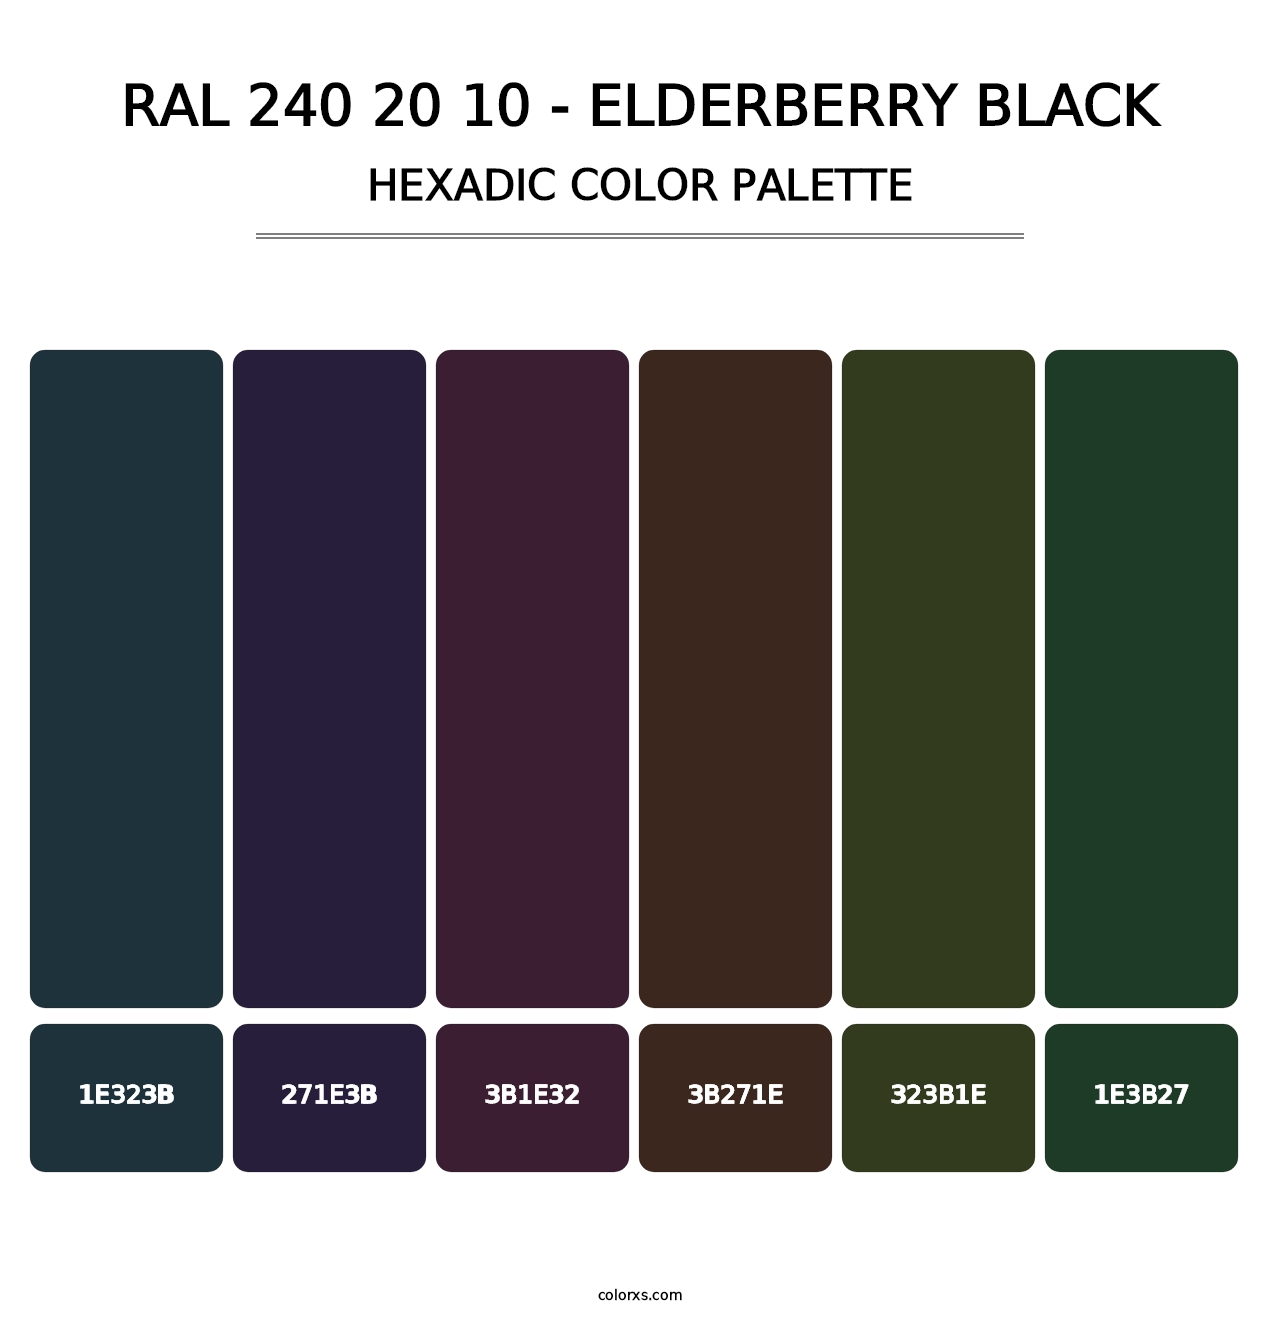 RAL 240 20 10 - Elderberry Black - Hexadic Color Palette